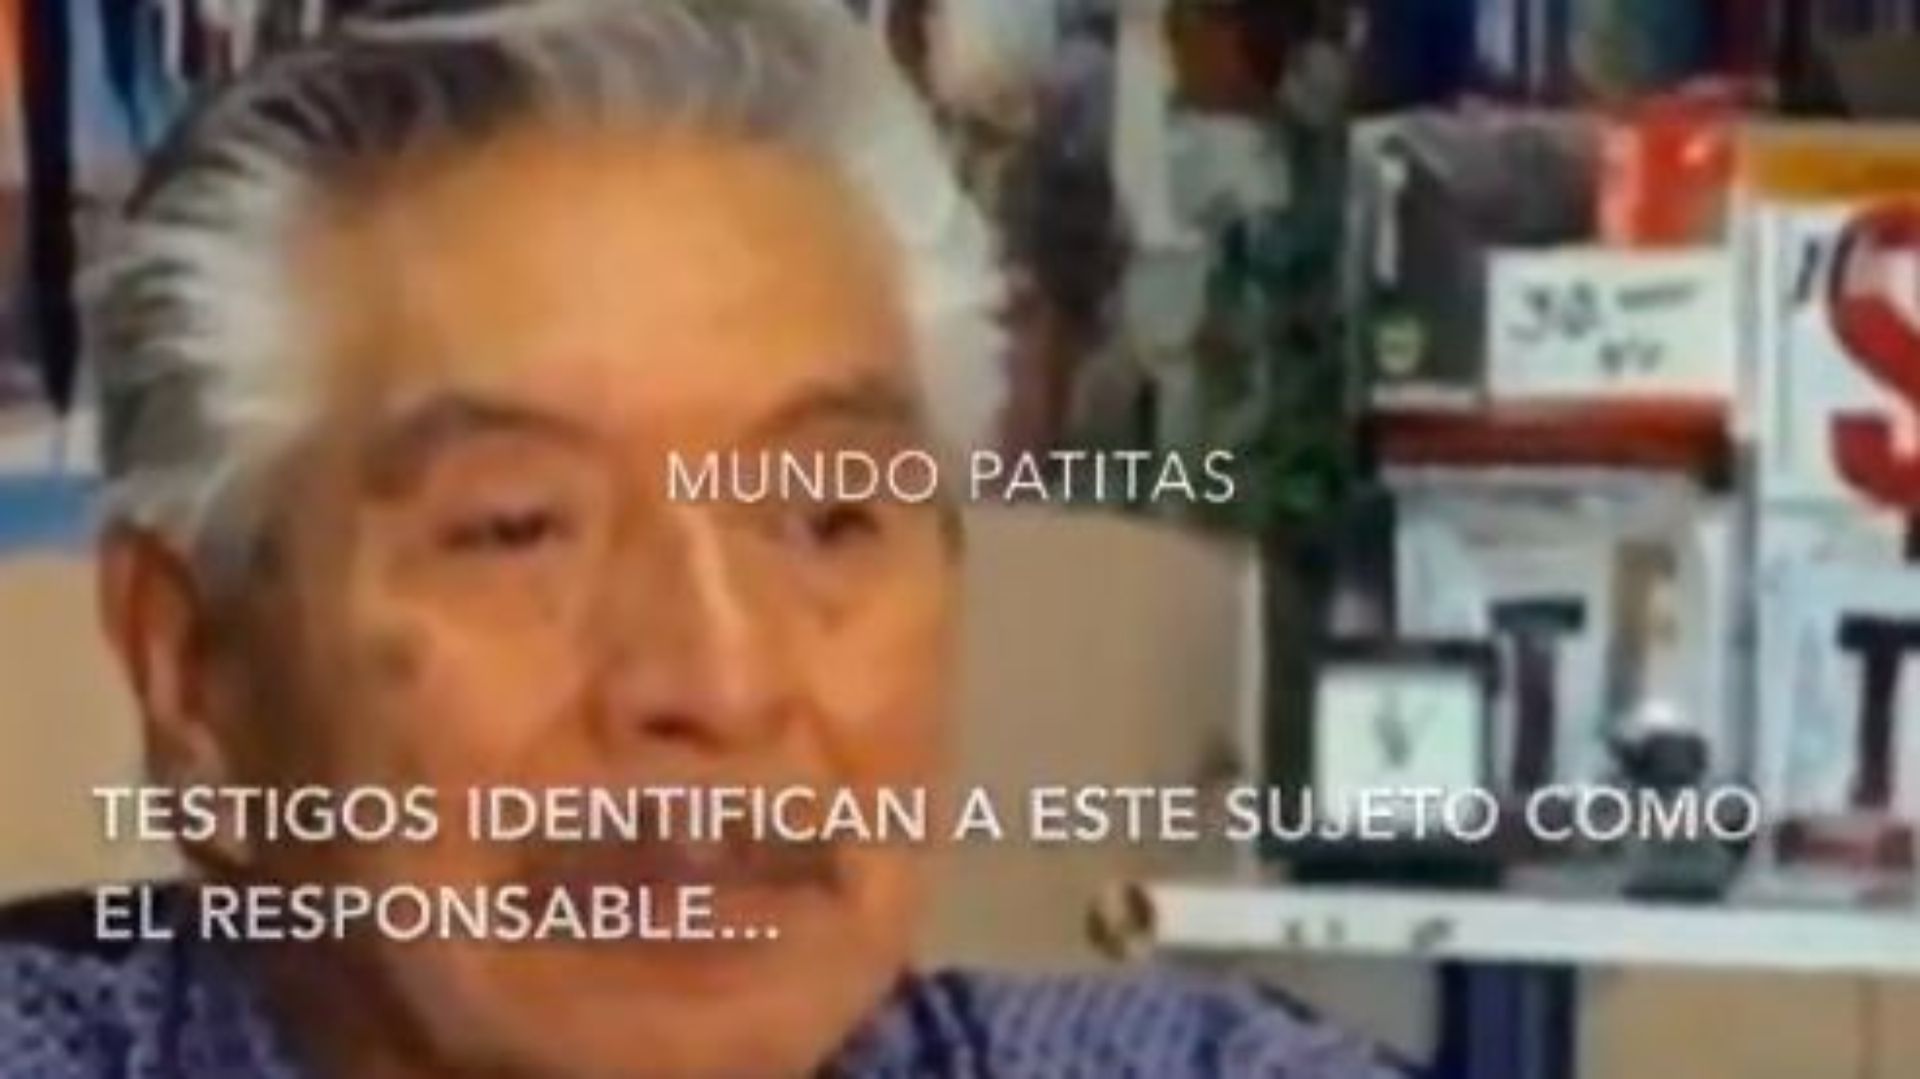 La asociación Mundo Patitas identificó a este hombre como su agresor (Foto: Mundo Patitas)